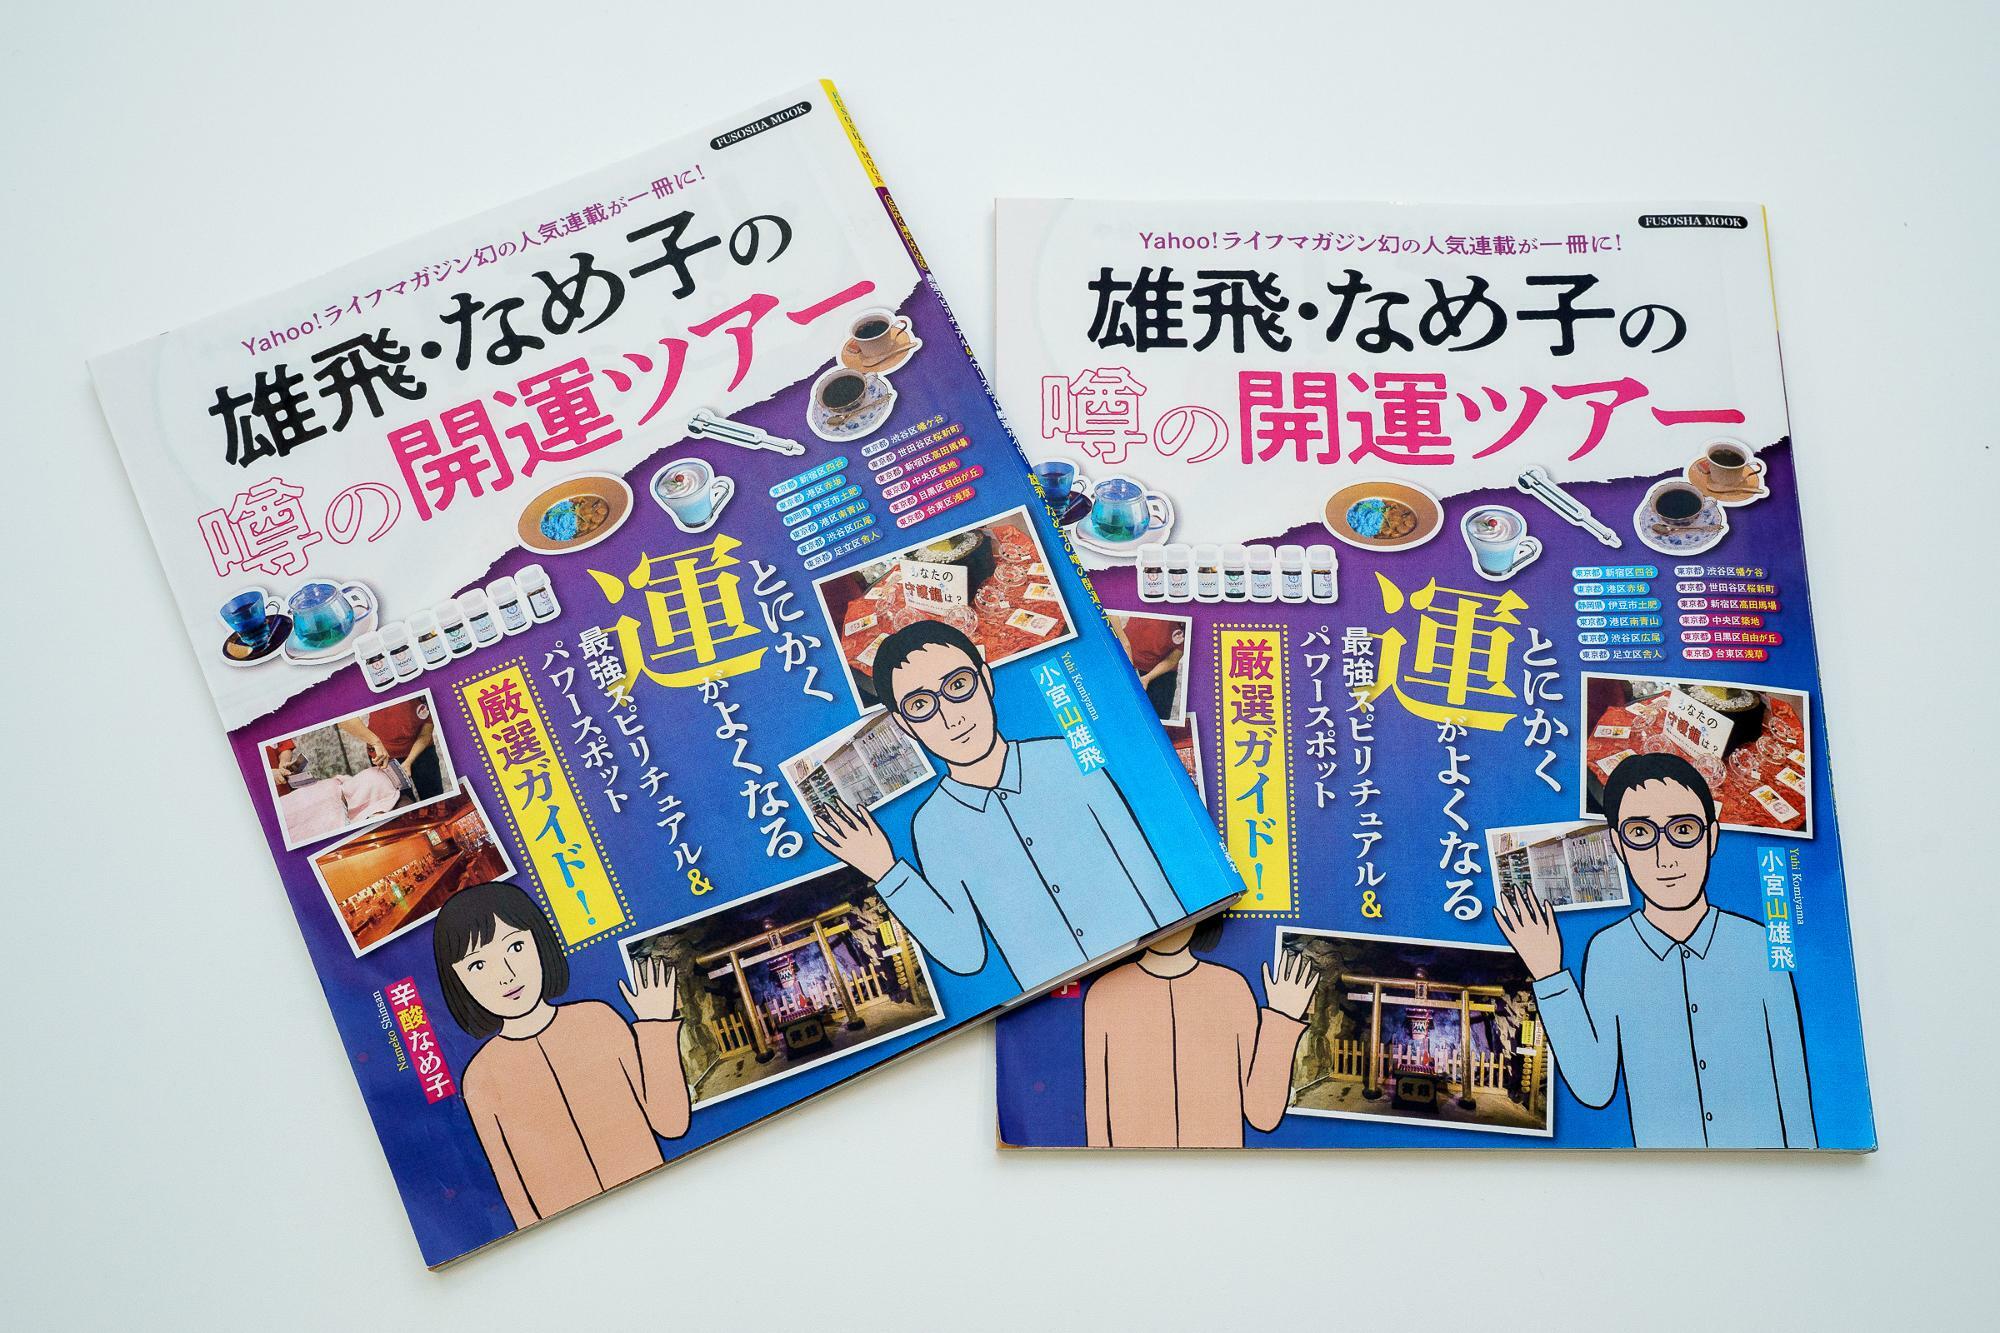 小宮山雄飛さんと辛酸なめ子さんの2人が訪ねた、全12の開運スポットを掲載した『雄飛・なめ子の噂の開運ツアー』は扶桑社より発行